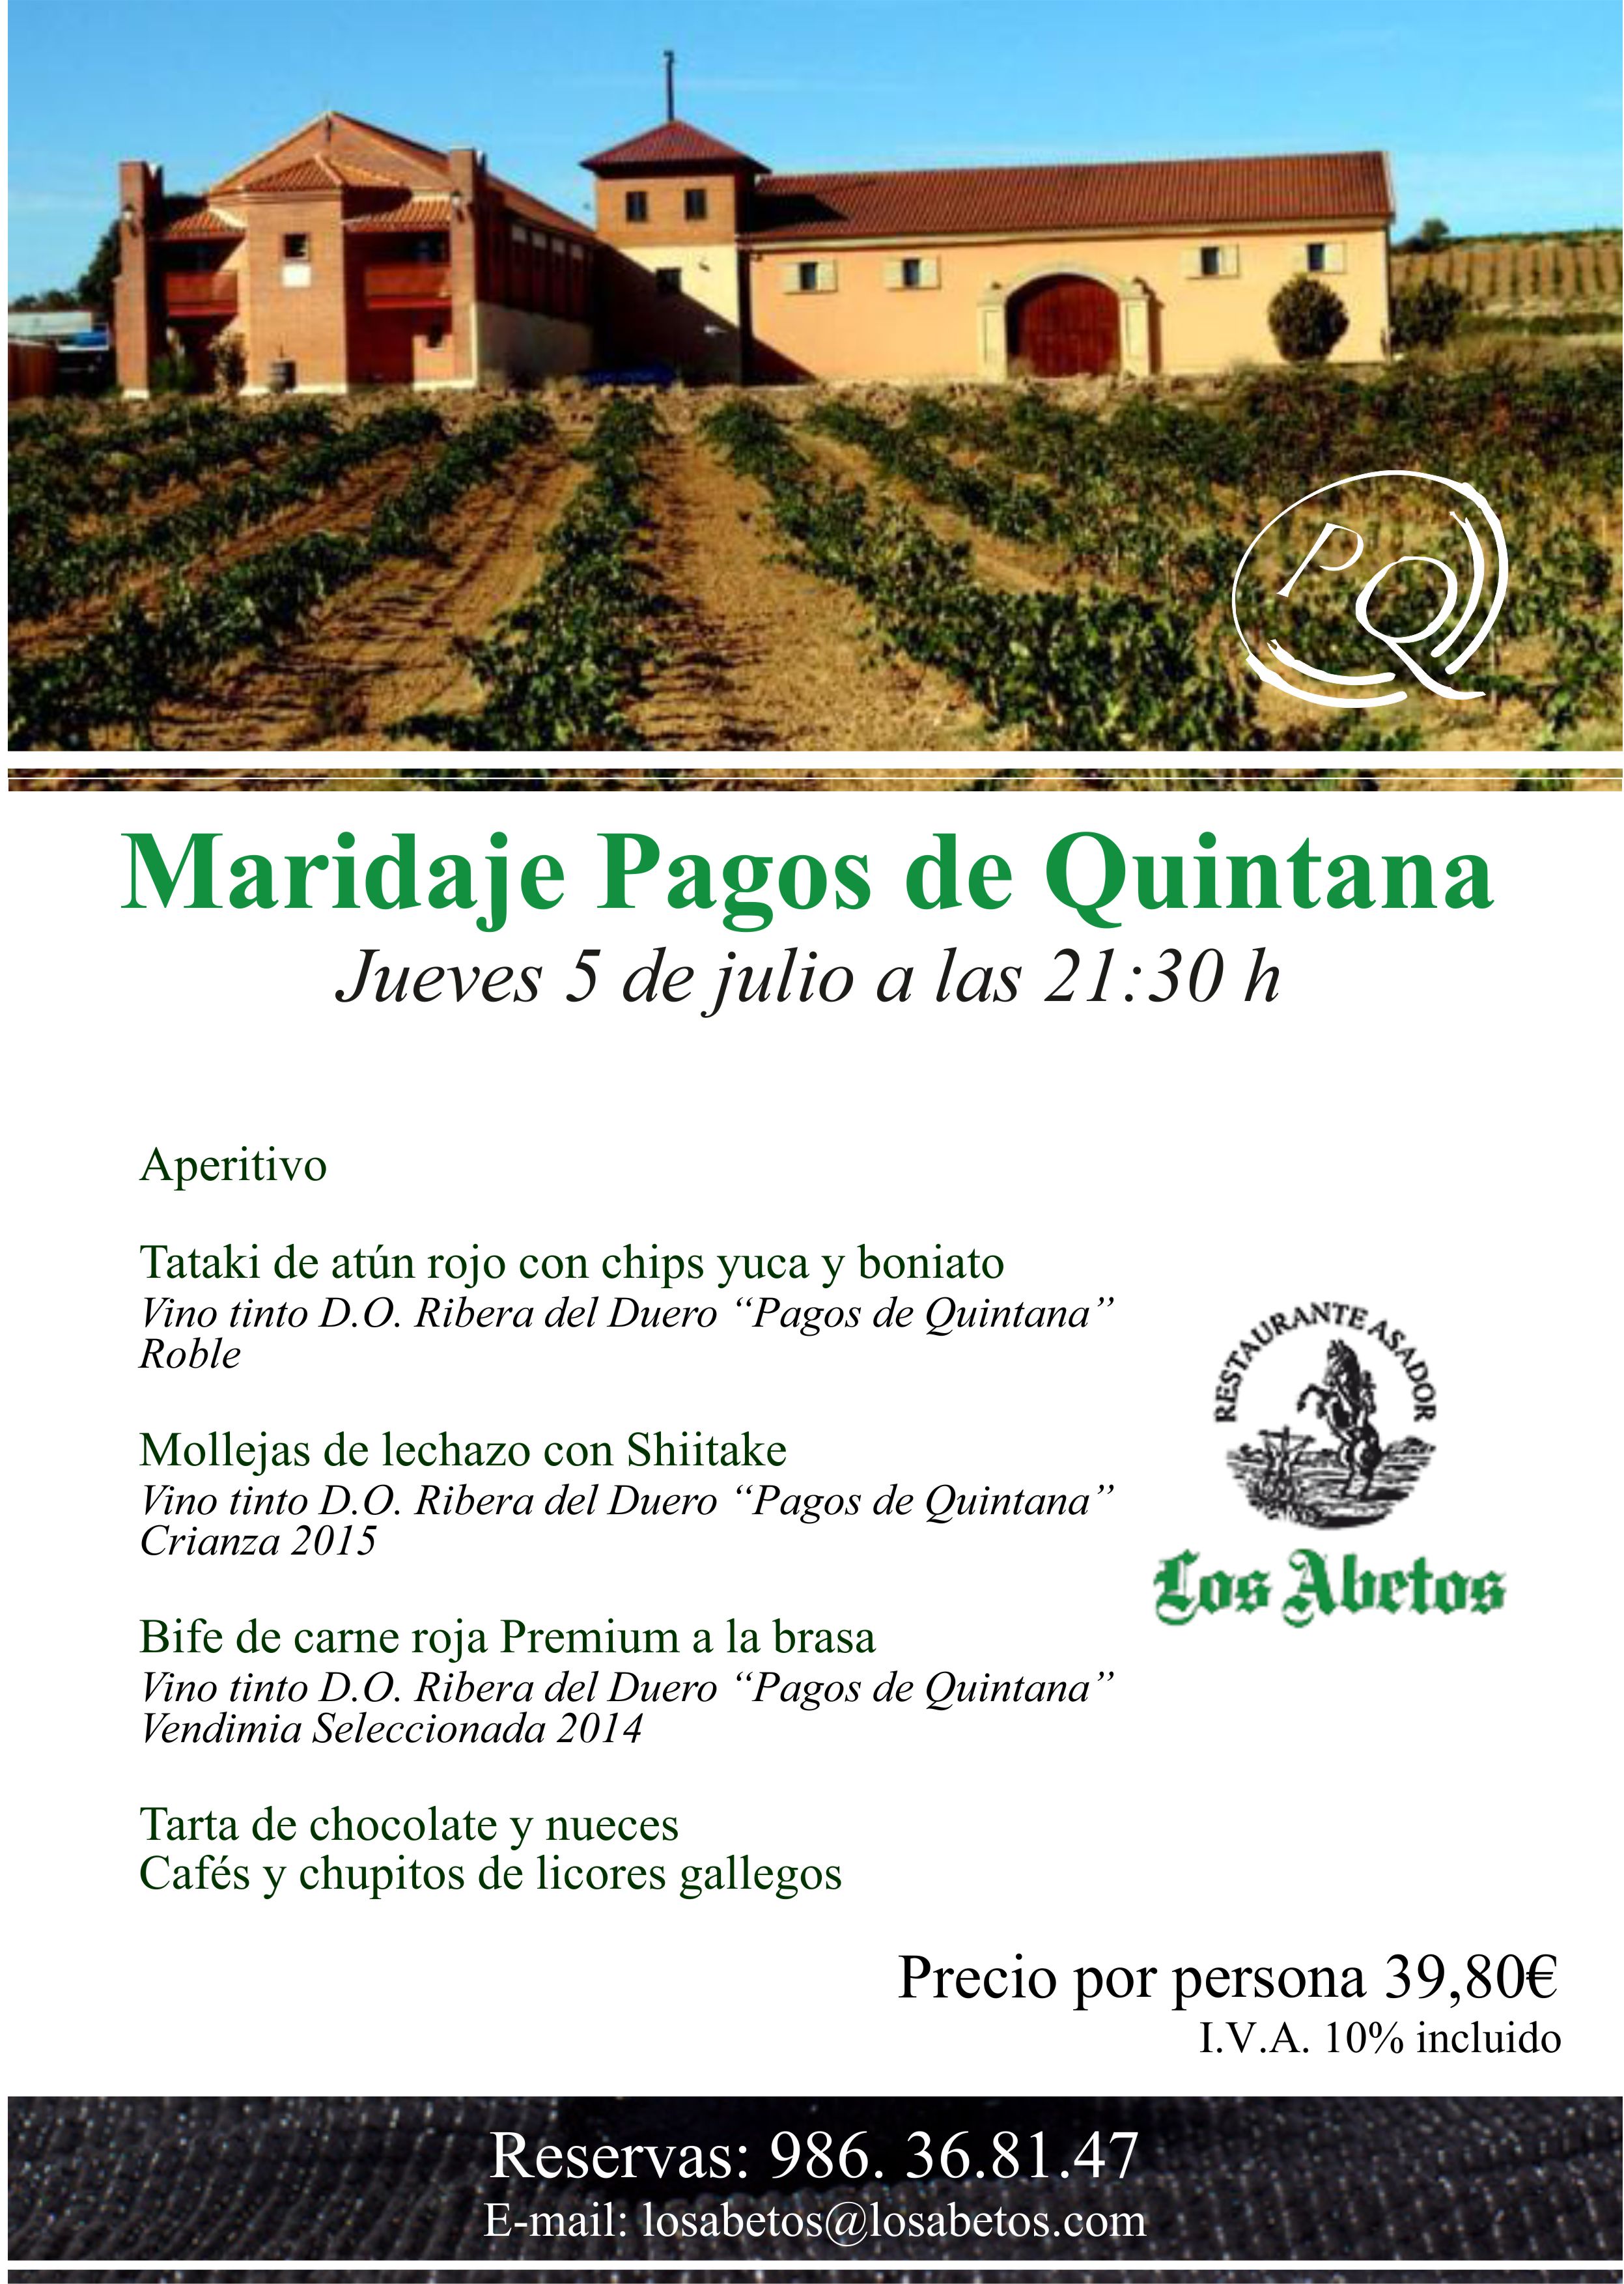 El próximo Jueves 5 de julio Maridaje Pagos de Quintana